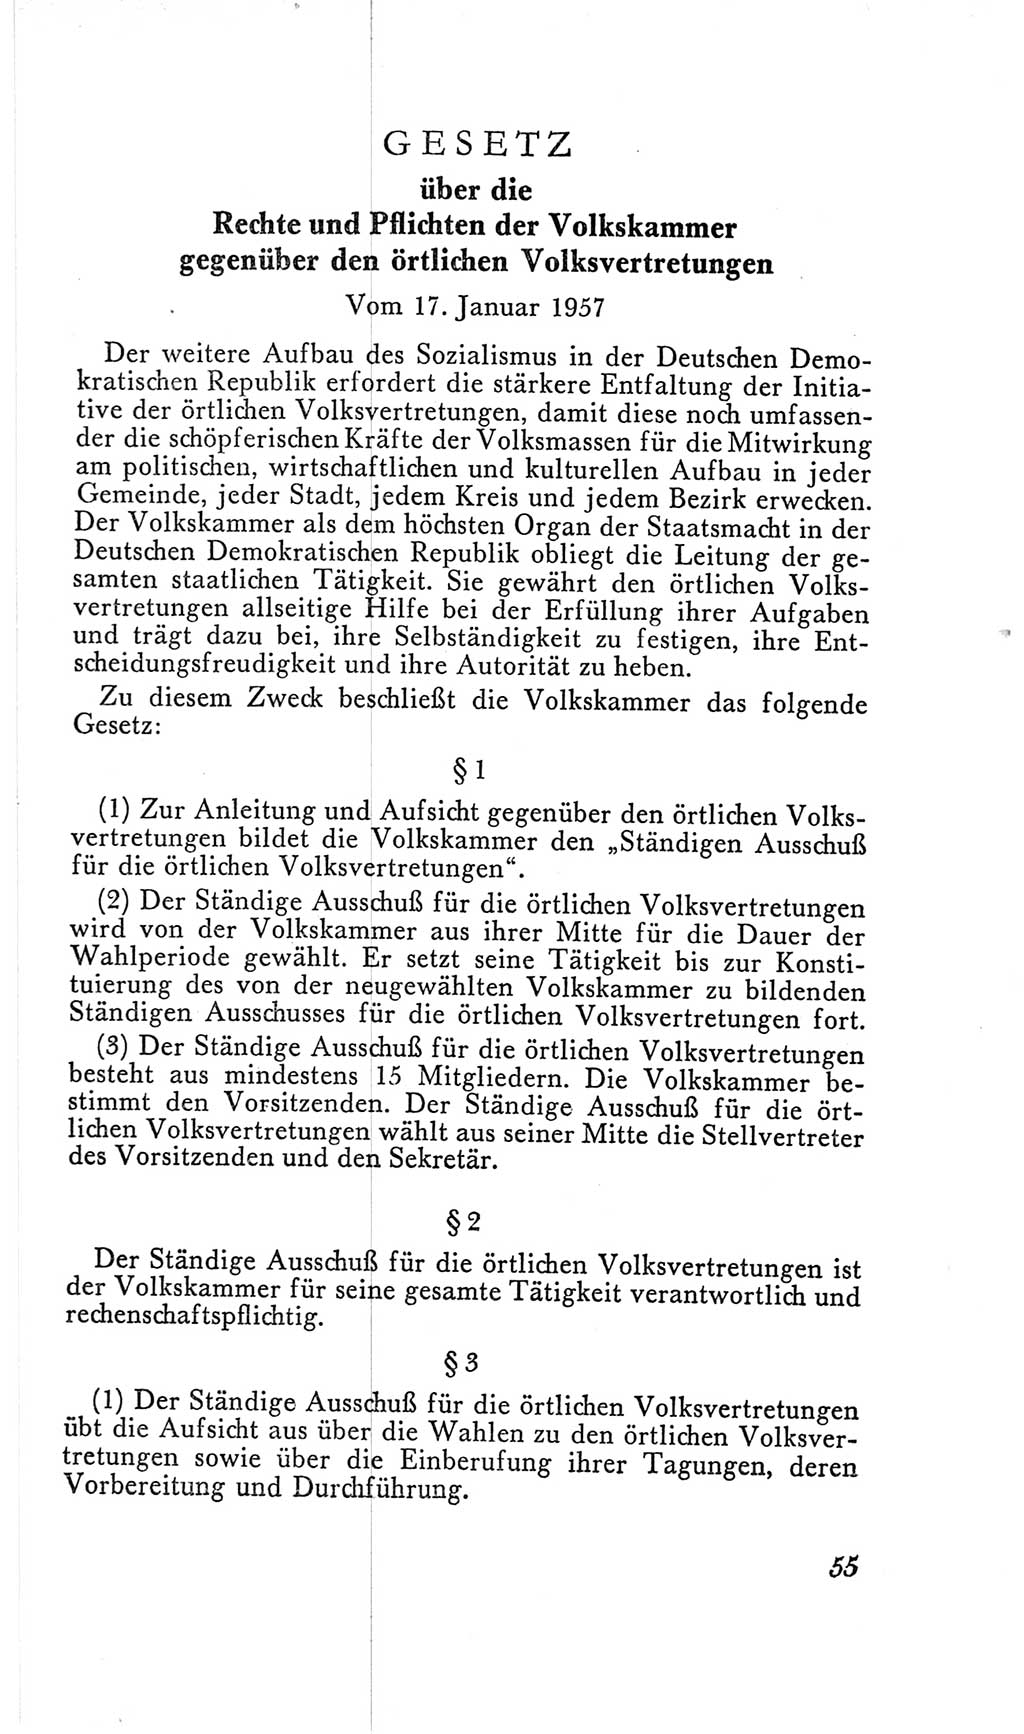 Handbuch der Volkskammer (VK) der Deutschen Demokratischen Republik (DDR), 2. Wahlperiode 1954-1958, Seite 55 (Hdb. VK. DDR, 2. WP. 1954-1958, S. 55)